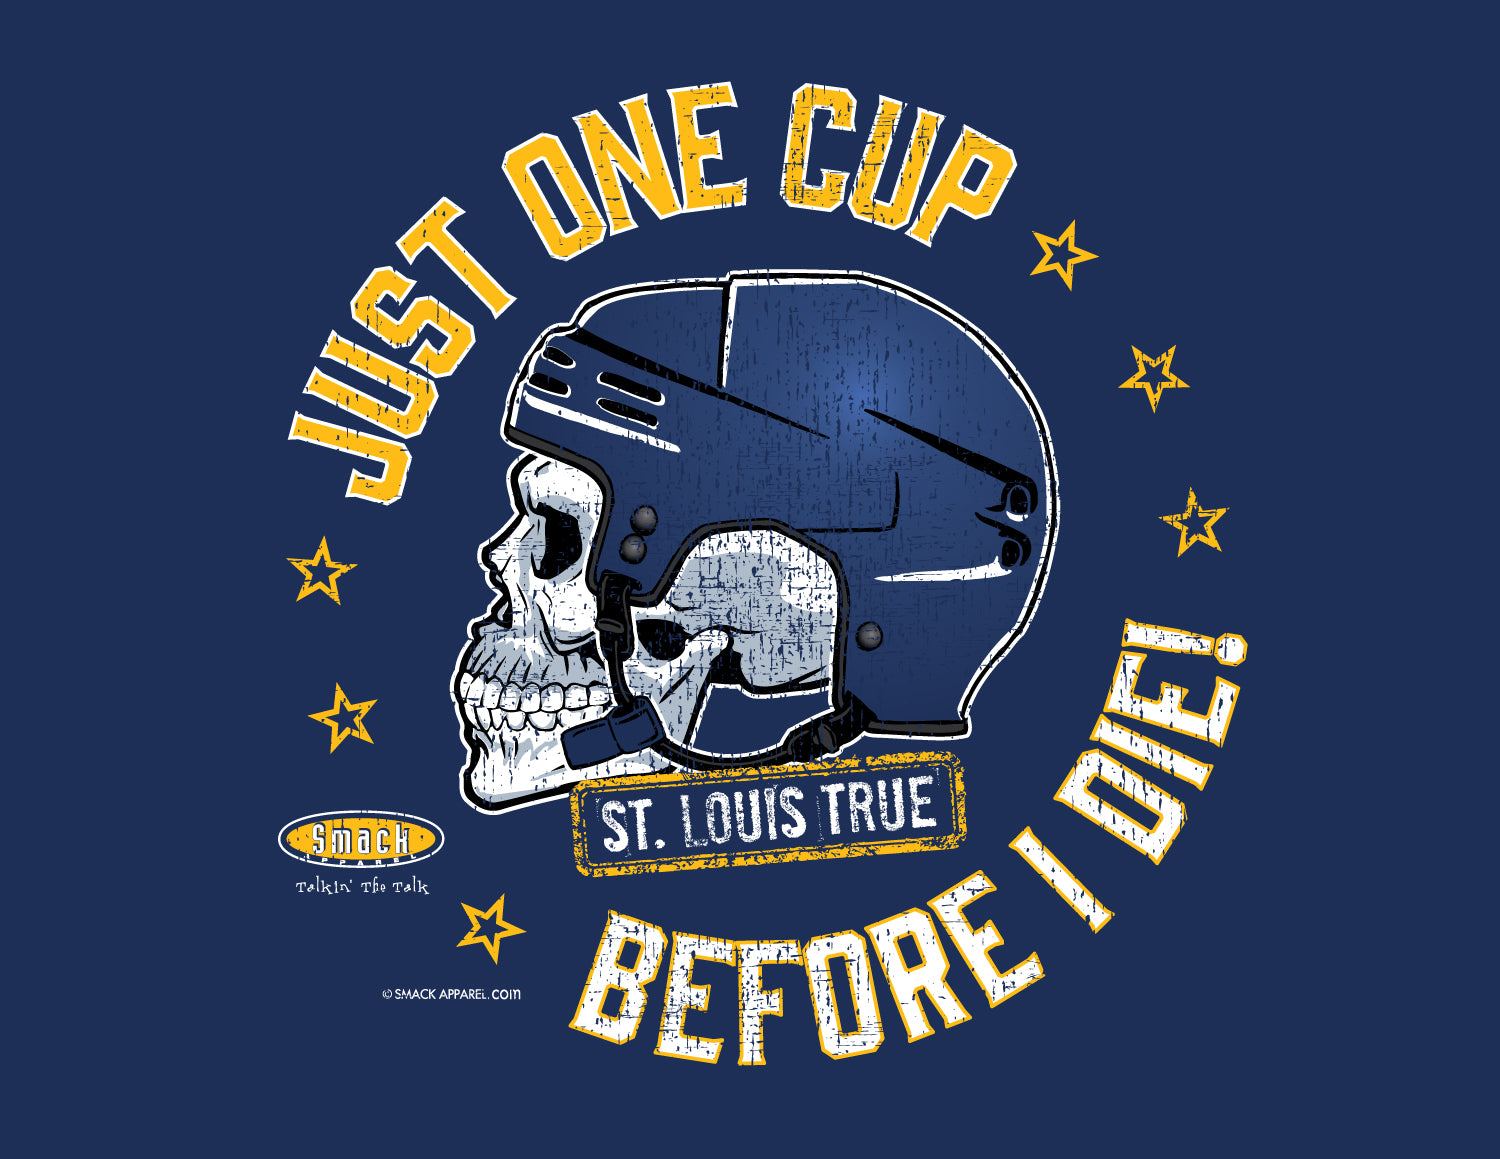  St. Louis Hockey Fans. Blue and Gold 'Til I'm Dead